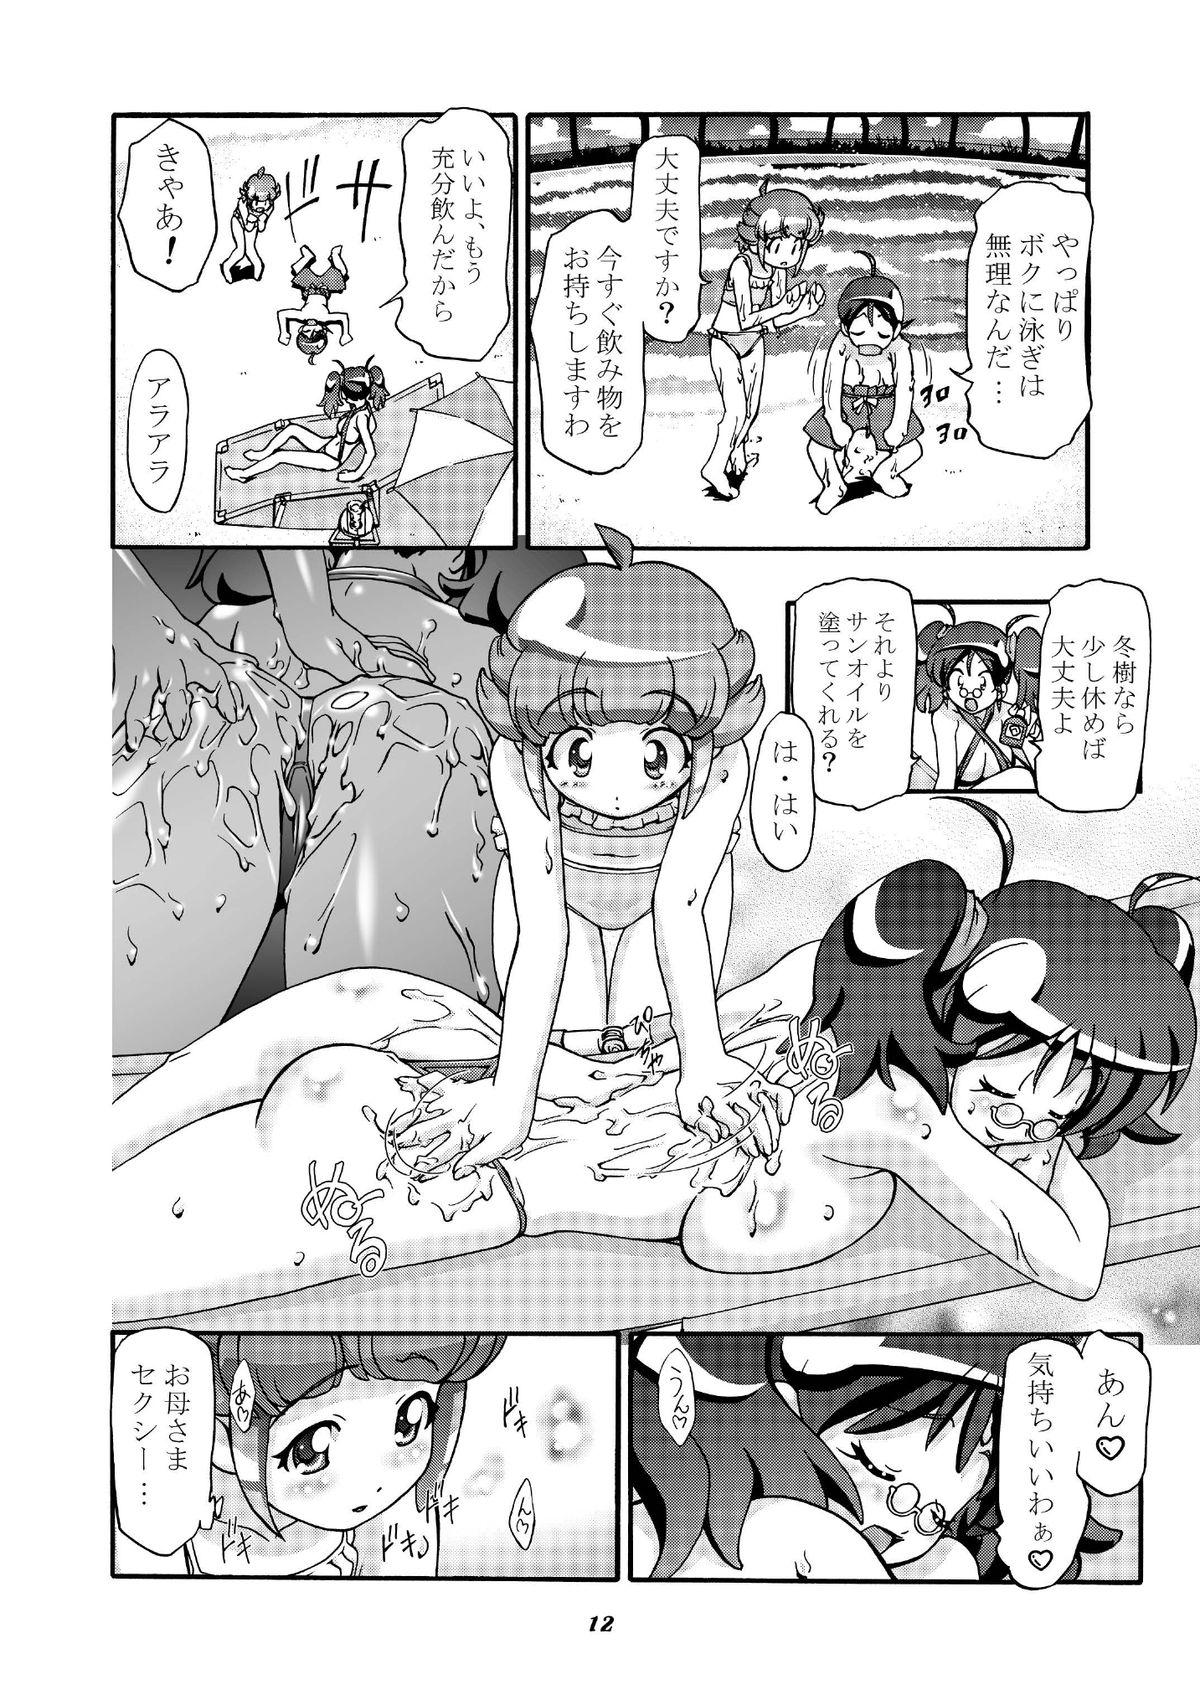 Slave Aki Momo - Autumn Peach - Keroro gunsou Rope - Page 11